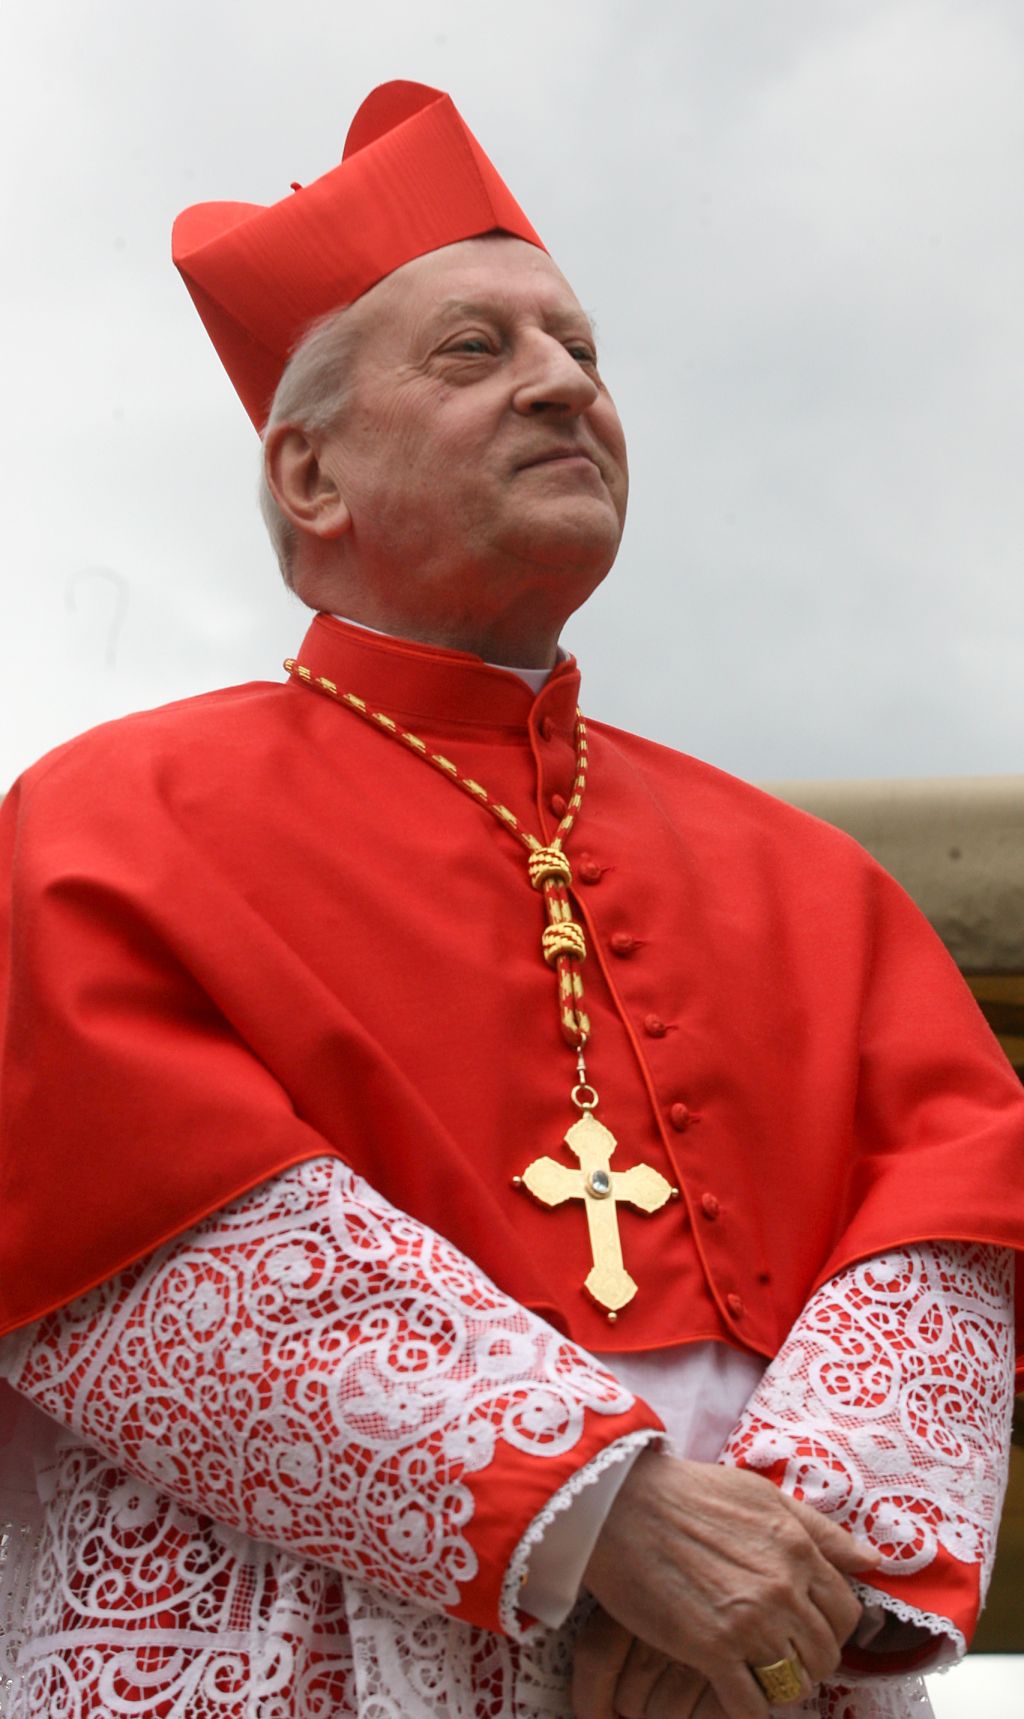 Rode: Novemu papežu je Slovenija pri srcu